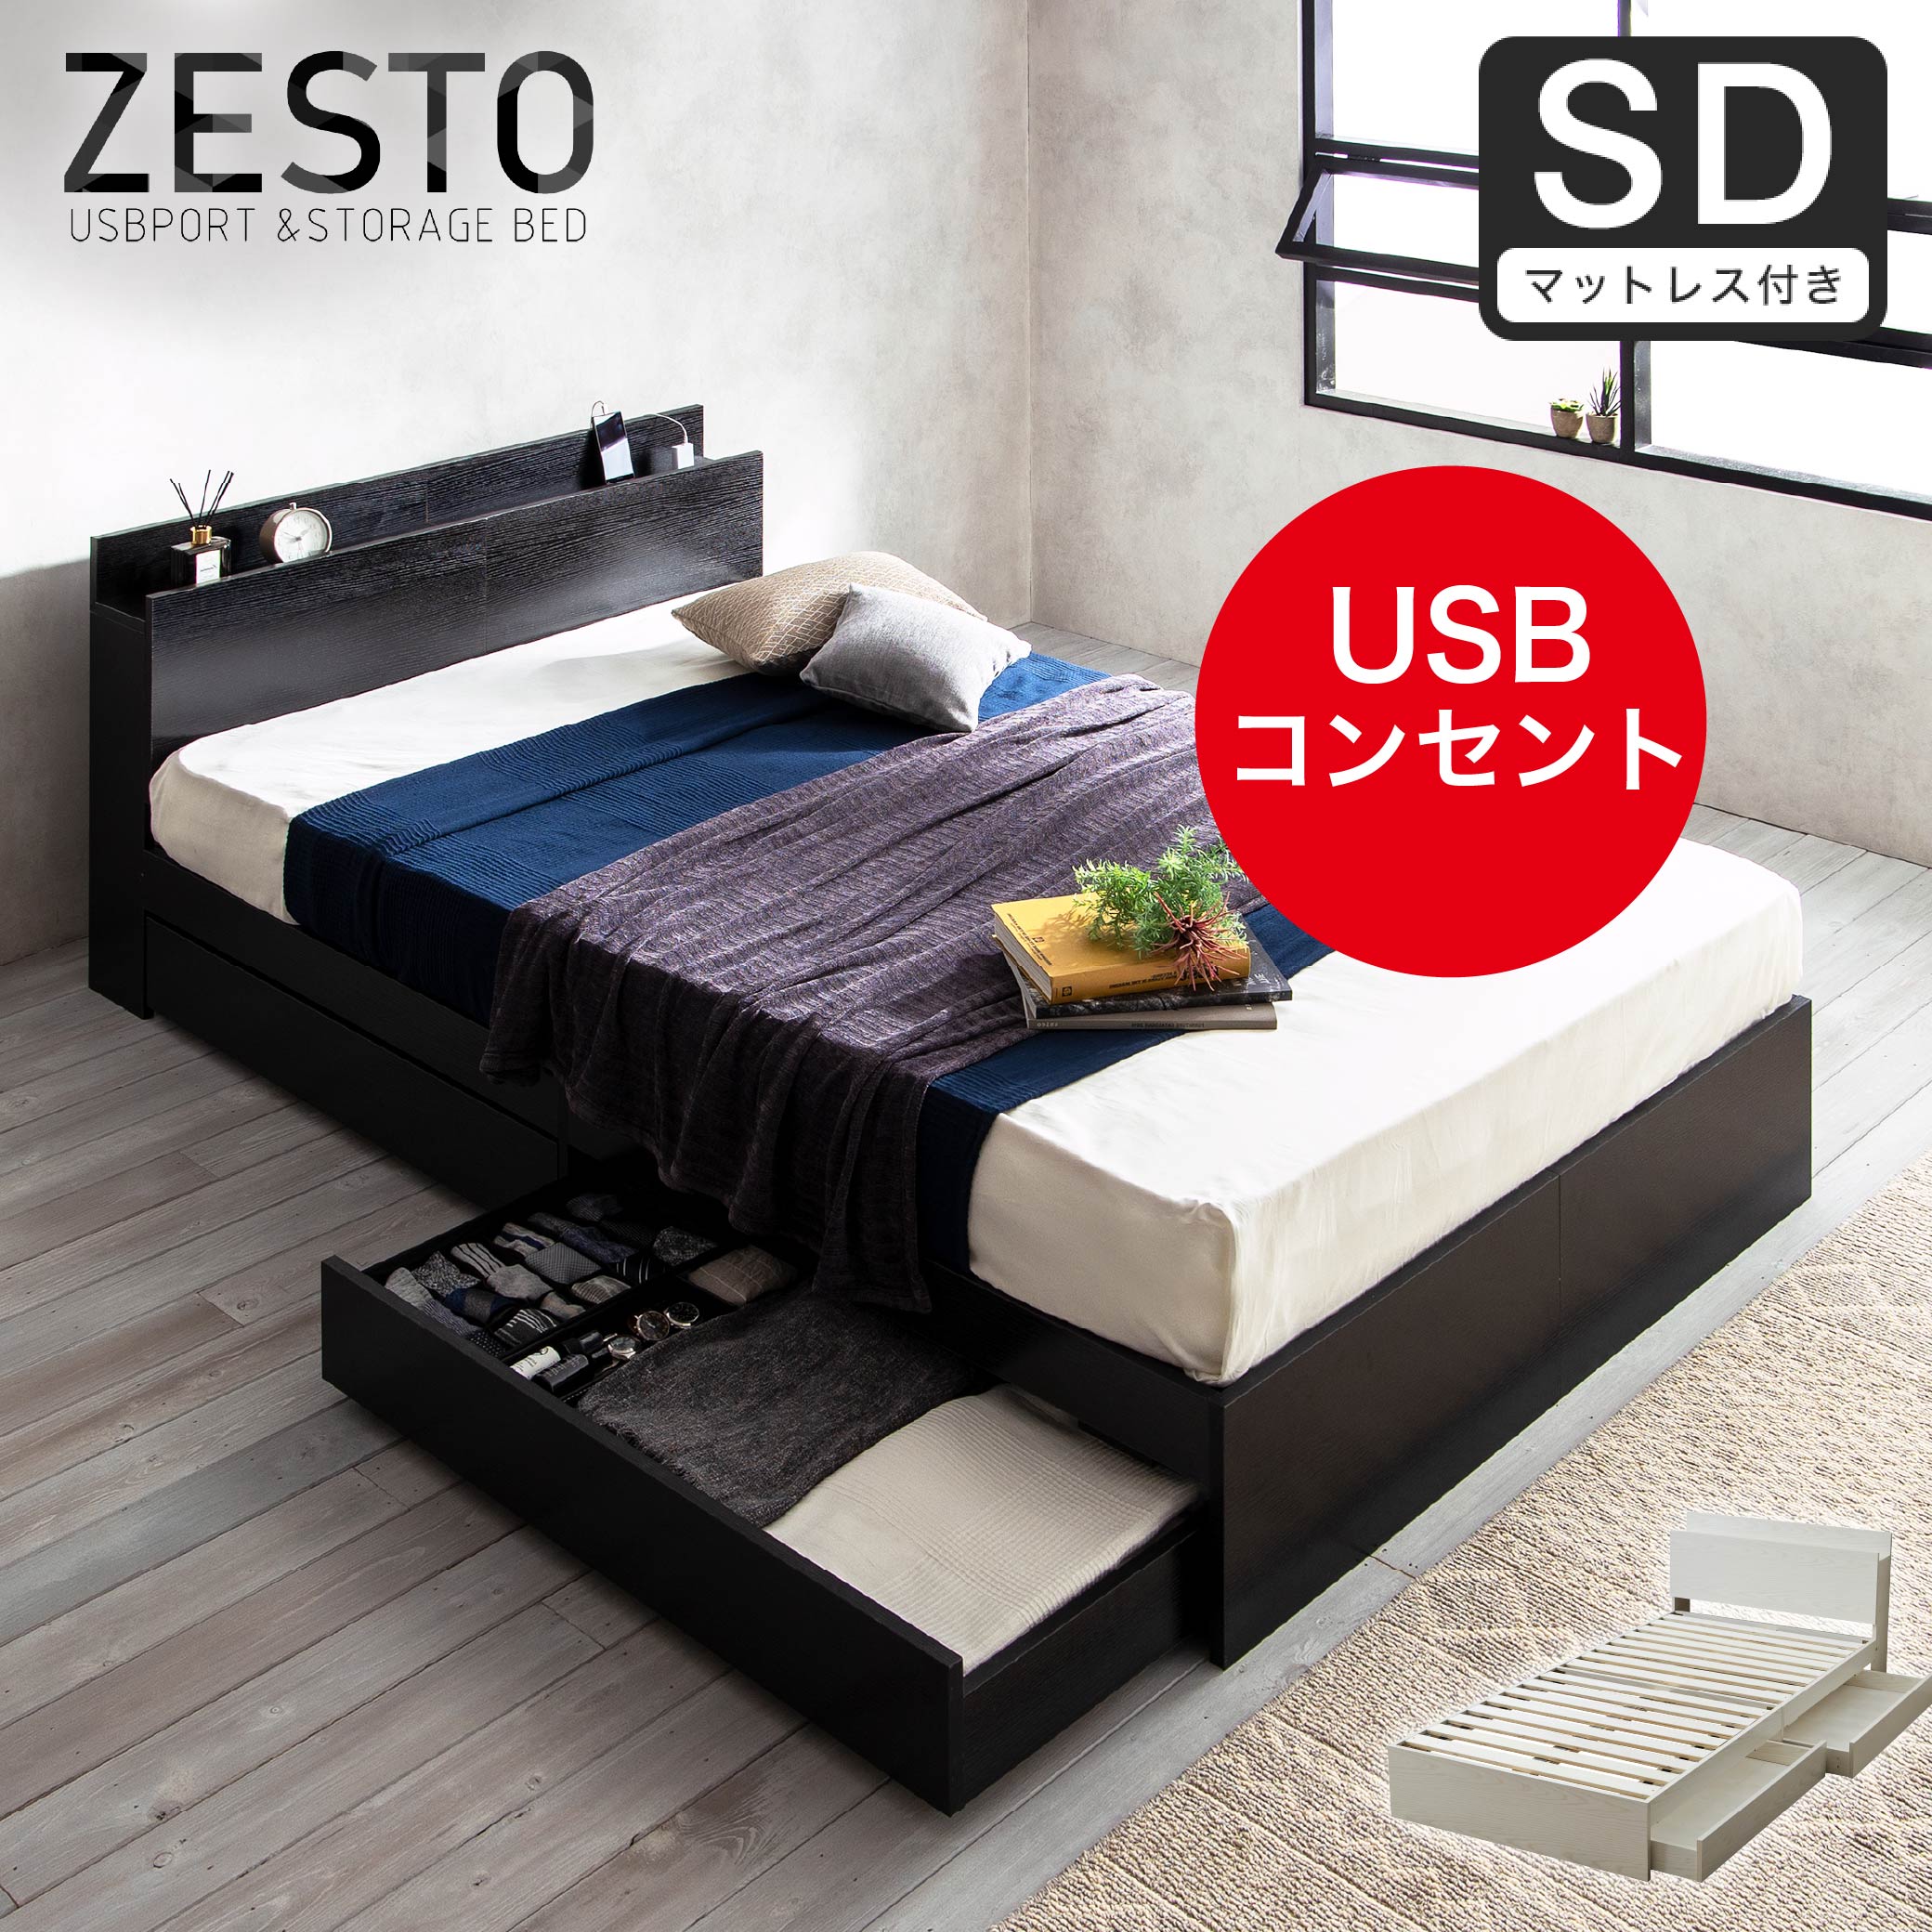 ベッド 収納 セミダブルベッド マットレス付き 収納付き USBコンセント付き zesto ゼスト セミダブル ネルコZマットレス付き すのこベッド  引き出し付きベッド zesto 木製ベッド